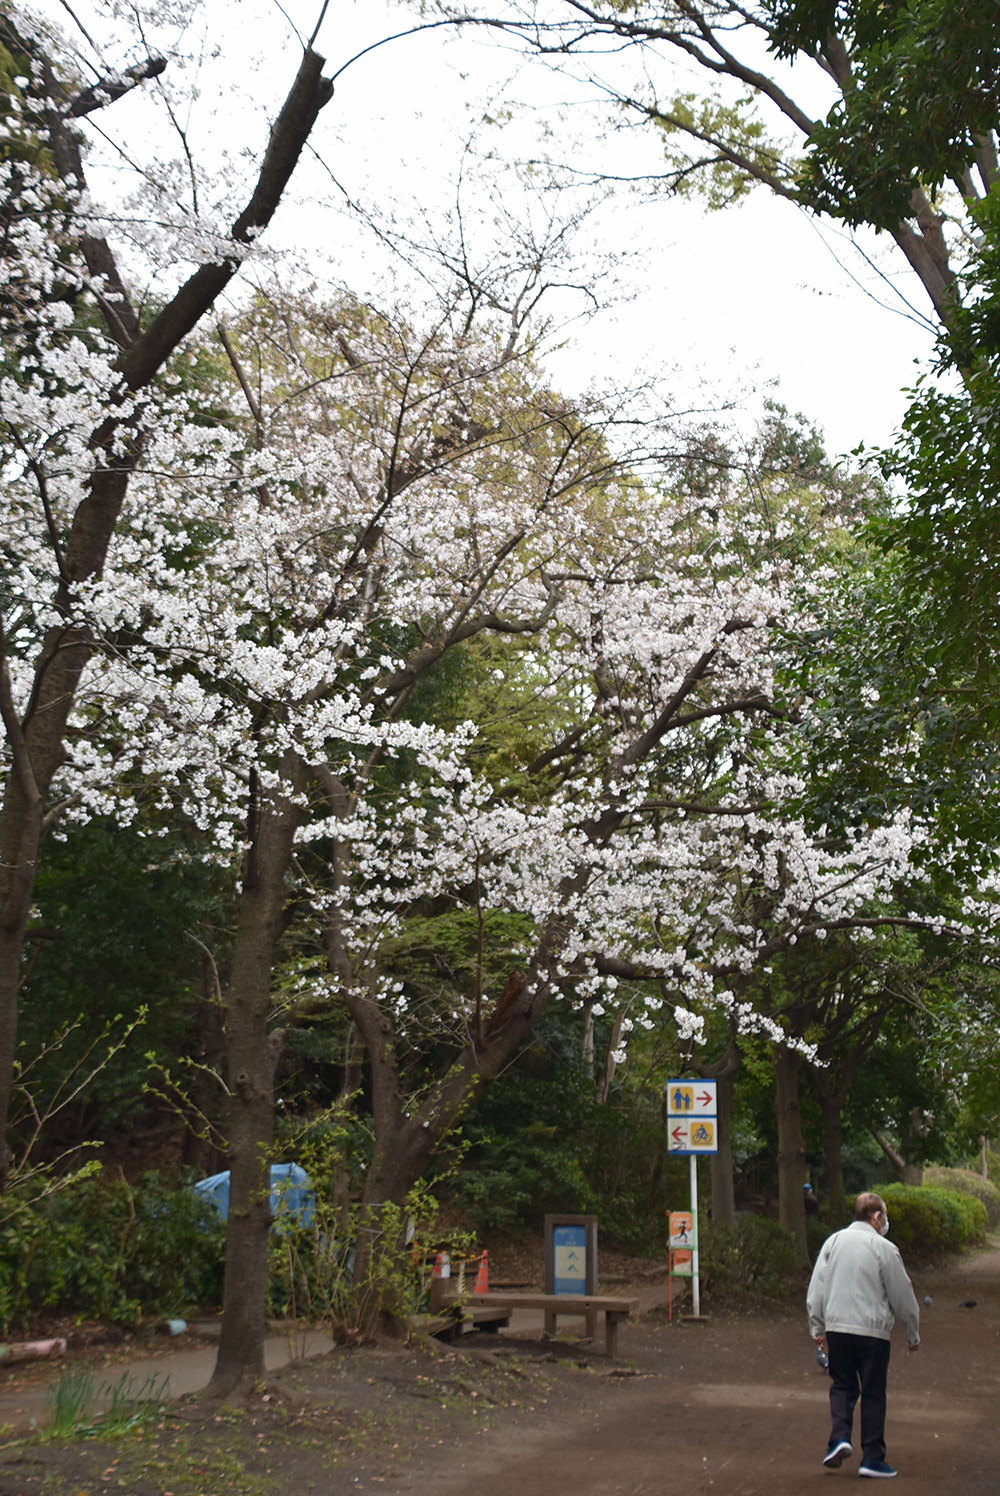 遊歩道沿いの桜